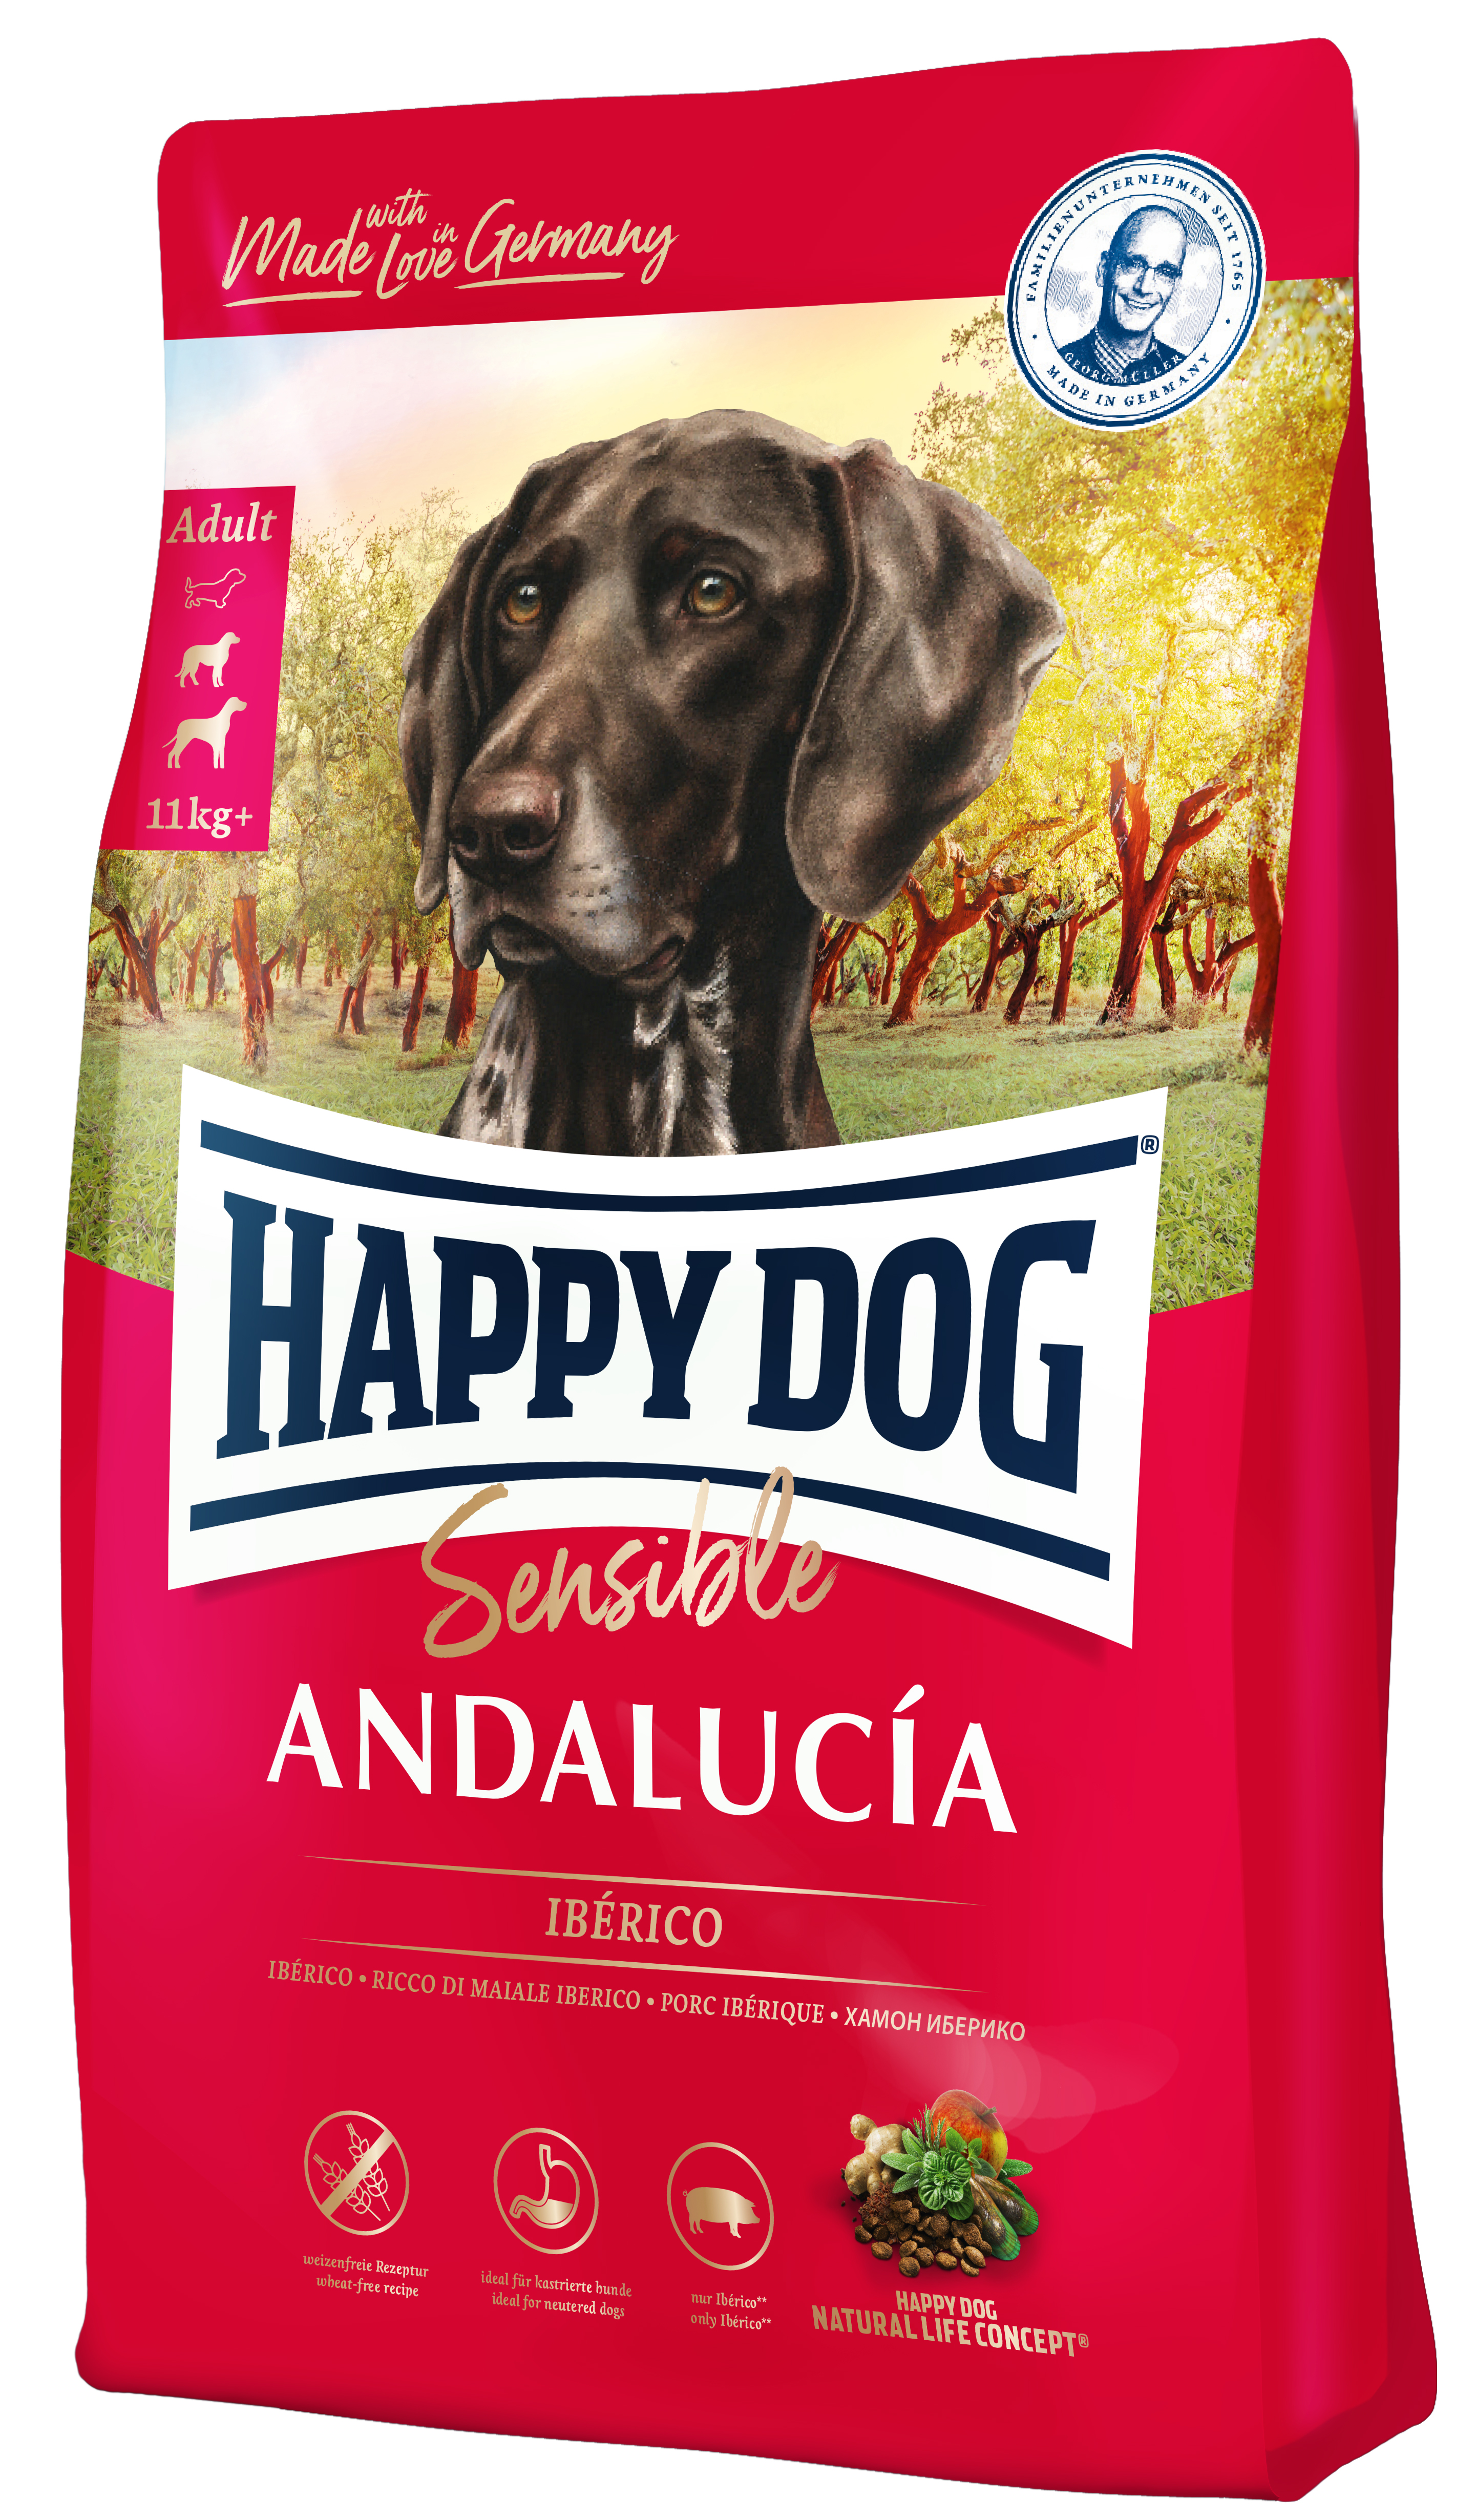 Happy Dog Sensible Andalucía 11 kg